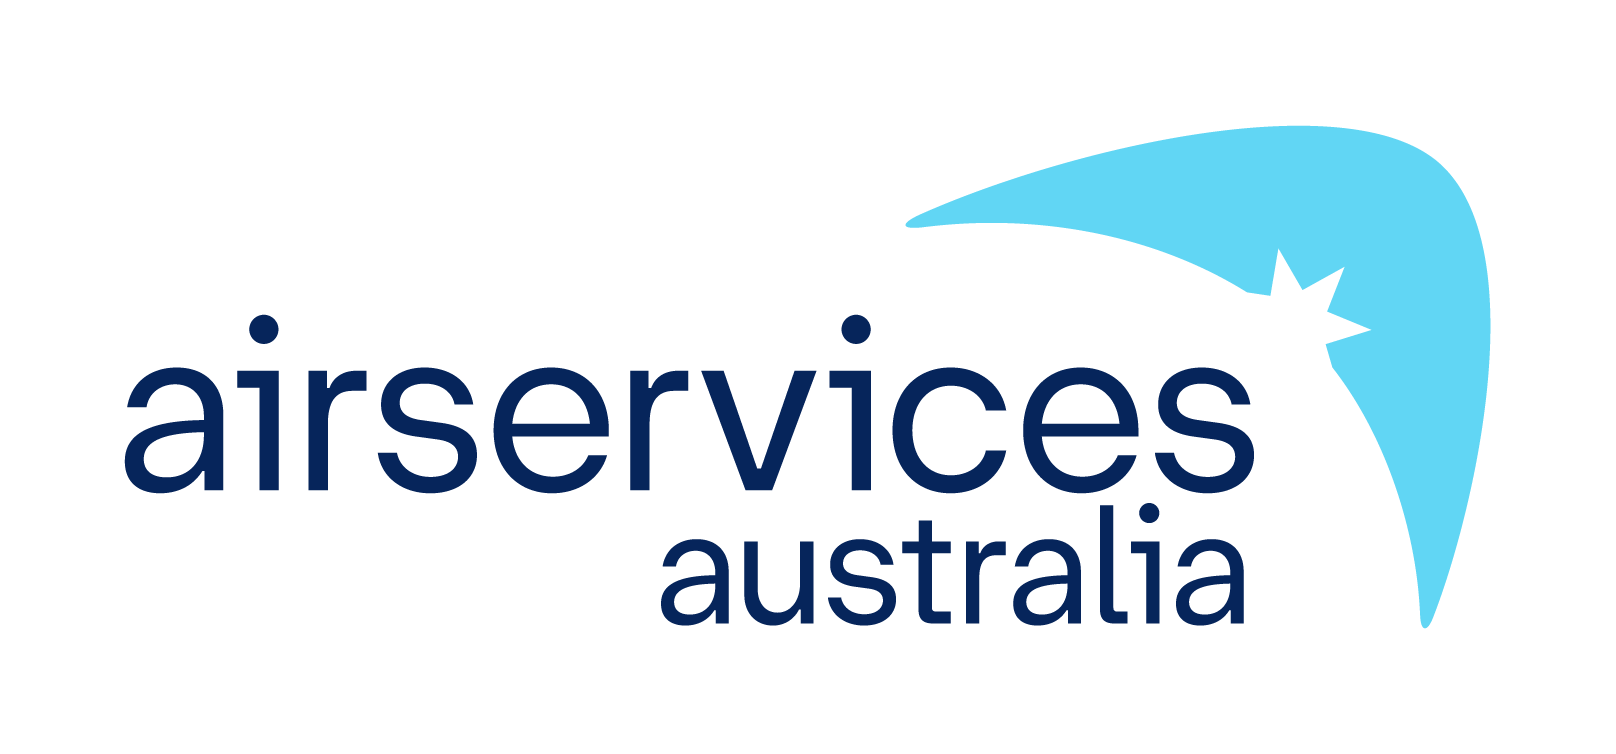 Airservices Australia